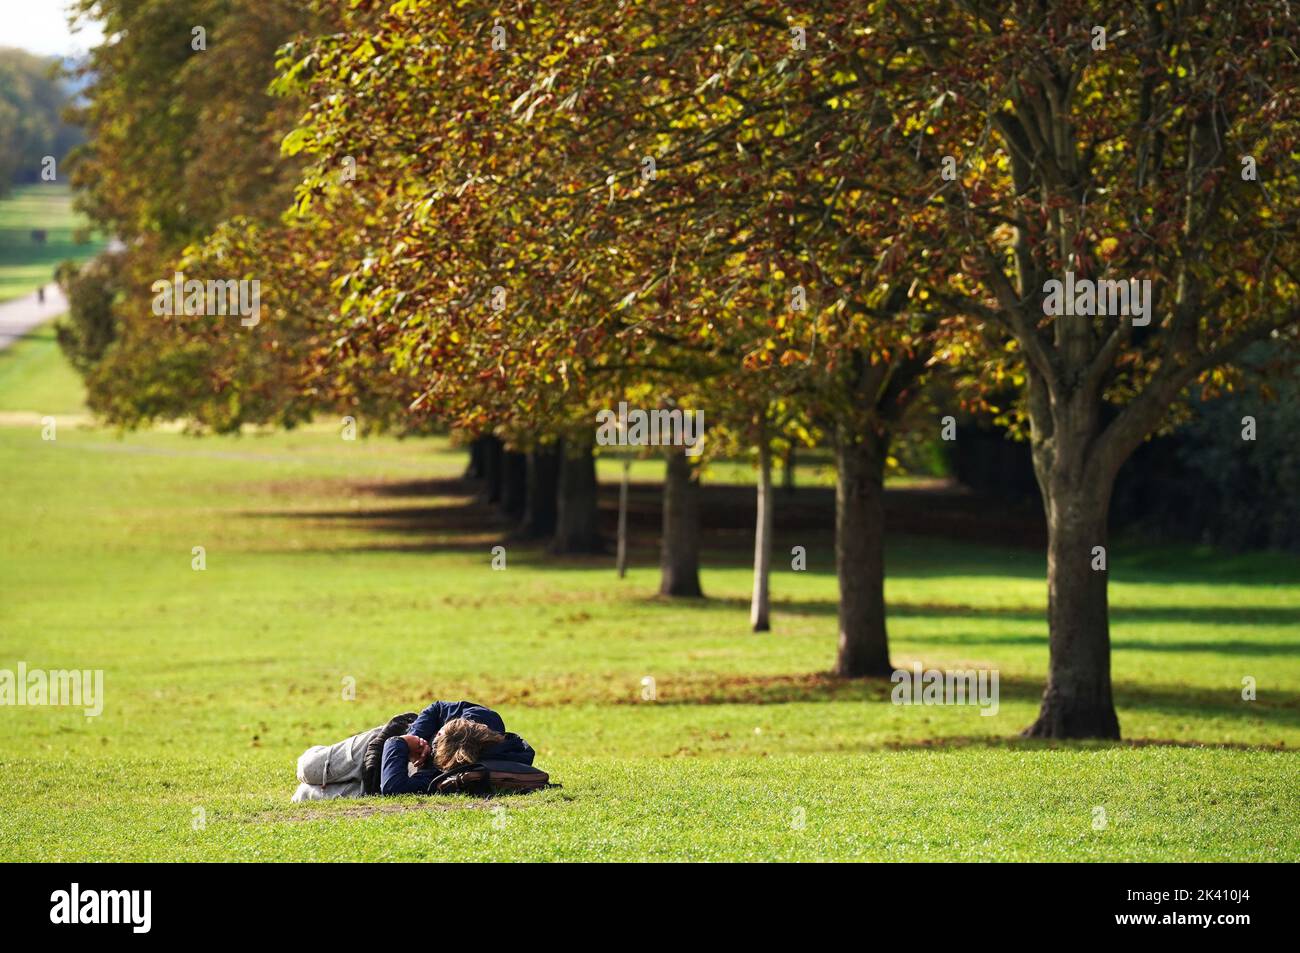 Ein Besucher des Windsor Great Park ruht auf dem Gras auf dem langen Spaziergang in der Nähe von Windsor Castle. Bilddatum: Donnerstag, 29. September 2022. Stockfoto